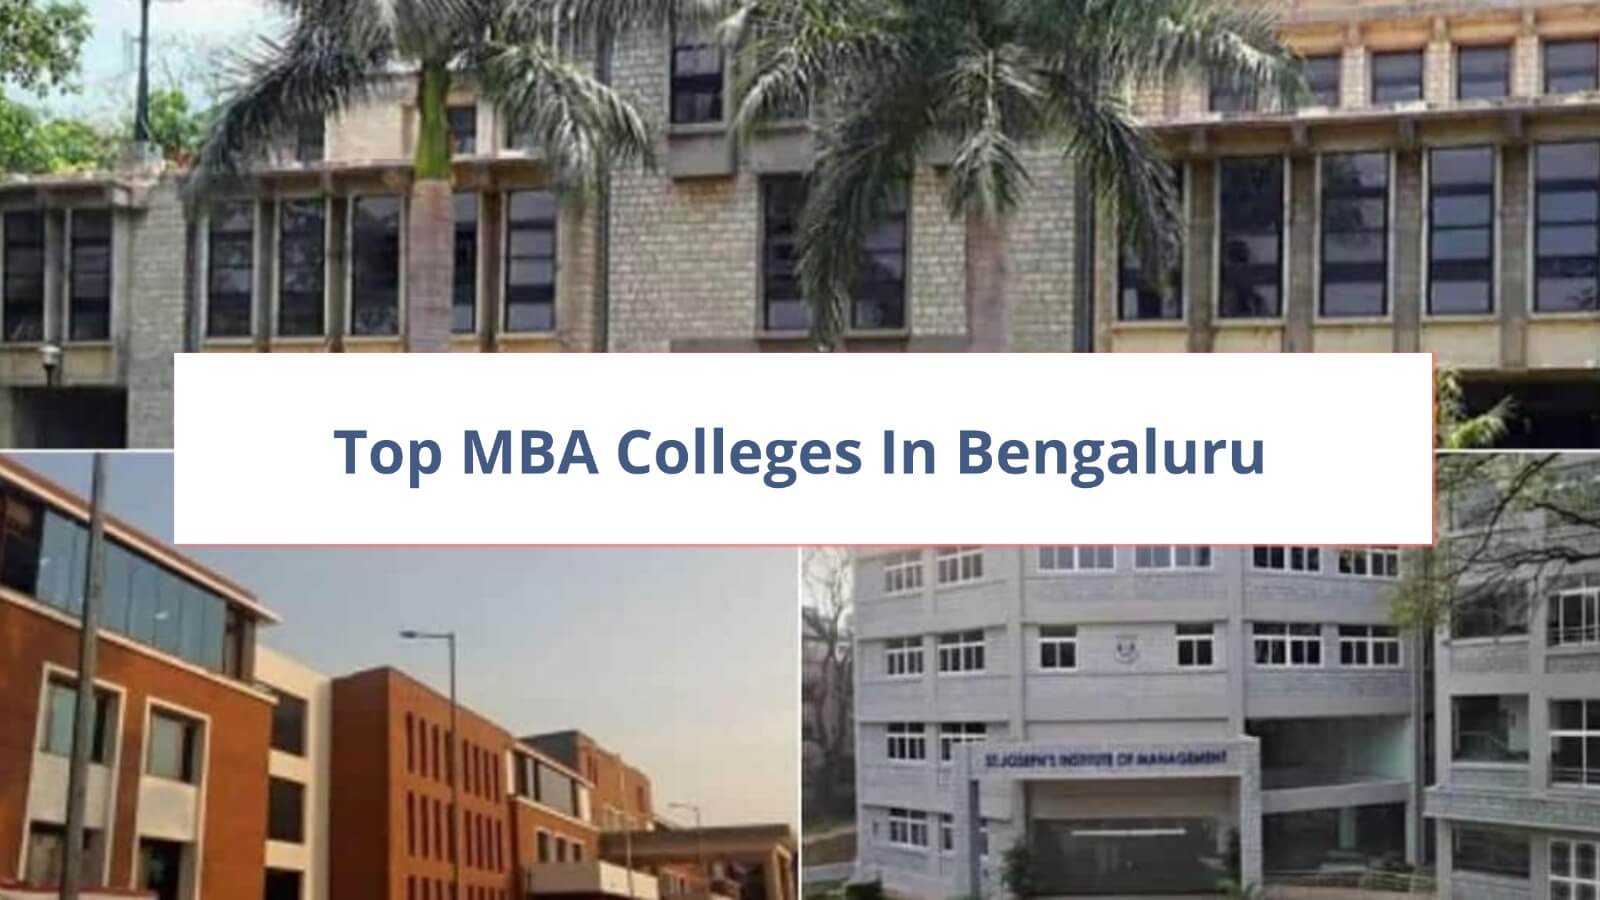 https://www.careermantra.net/blog/top-mba-colleges-in-bengaluru/